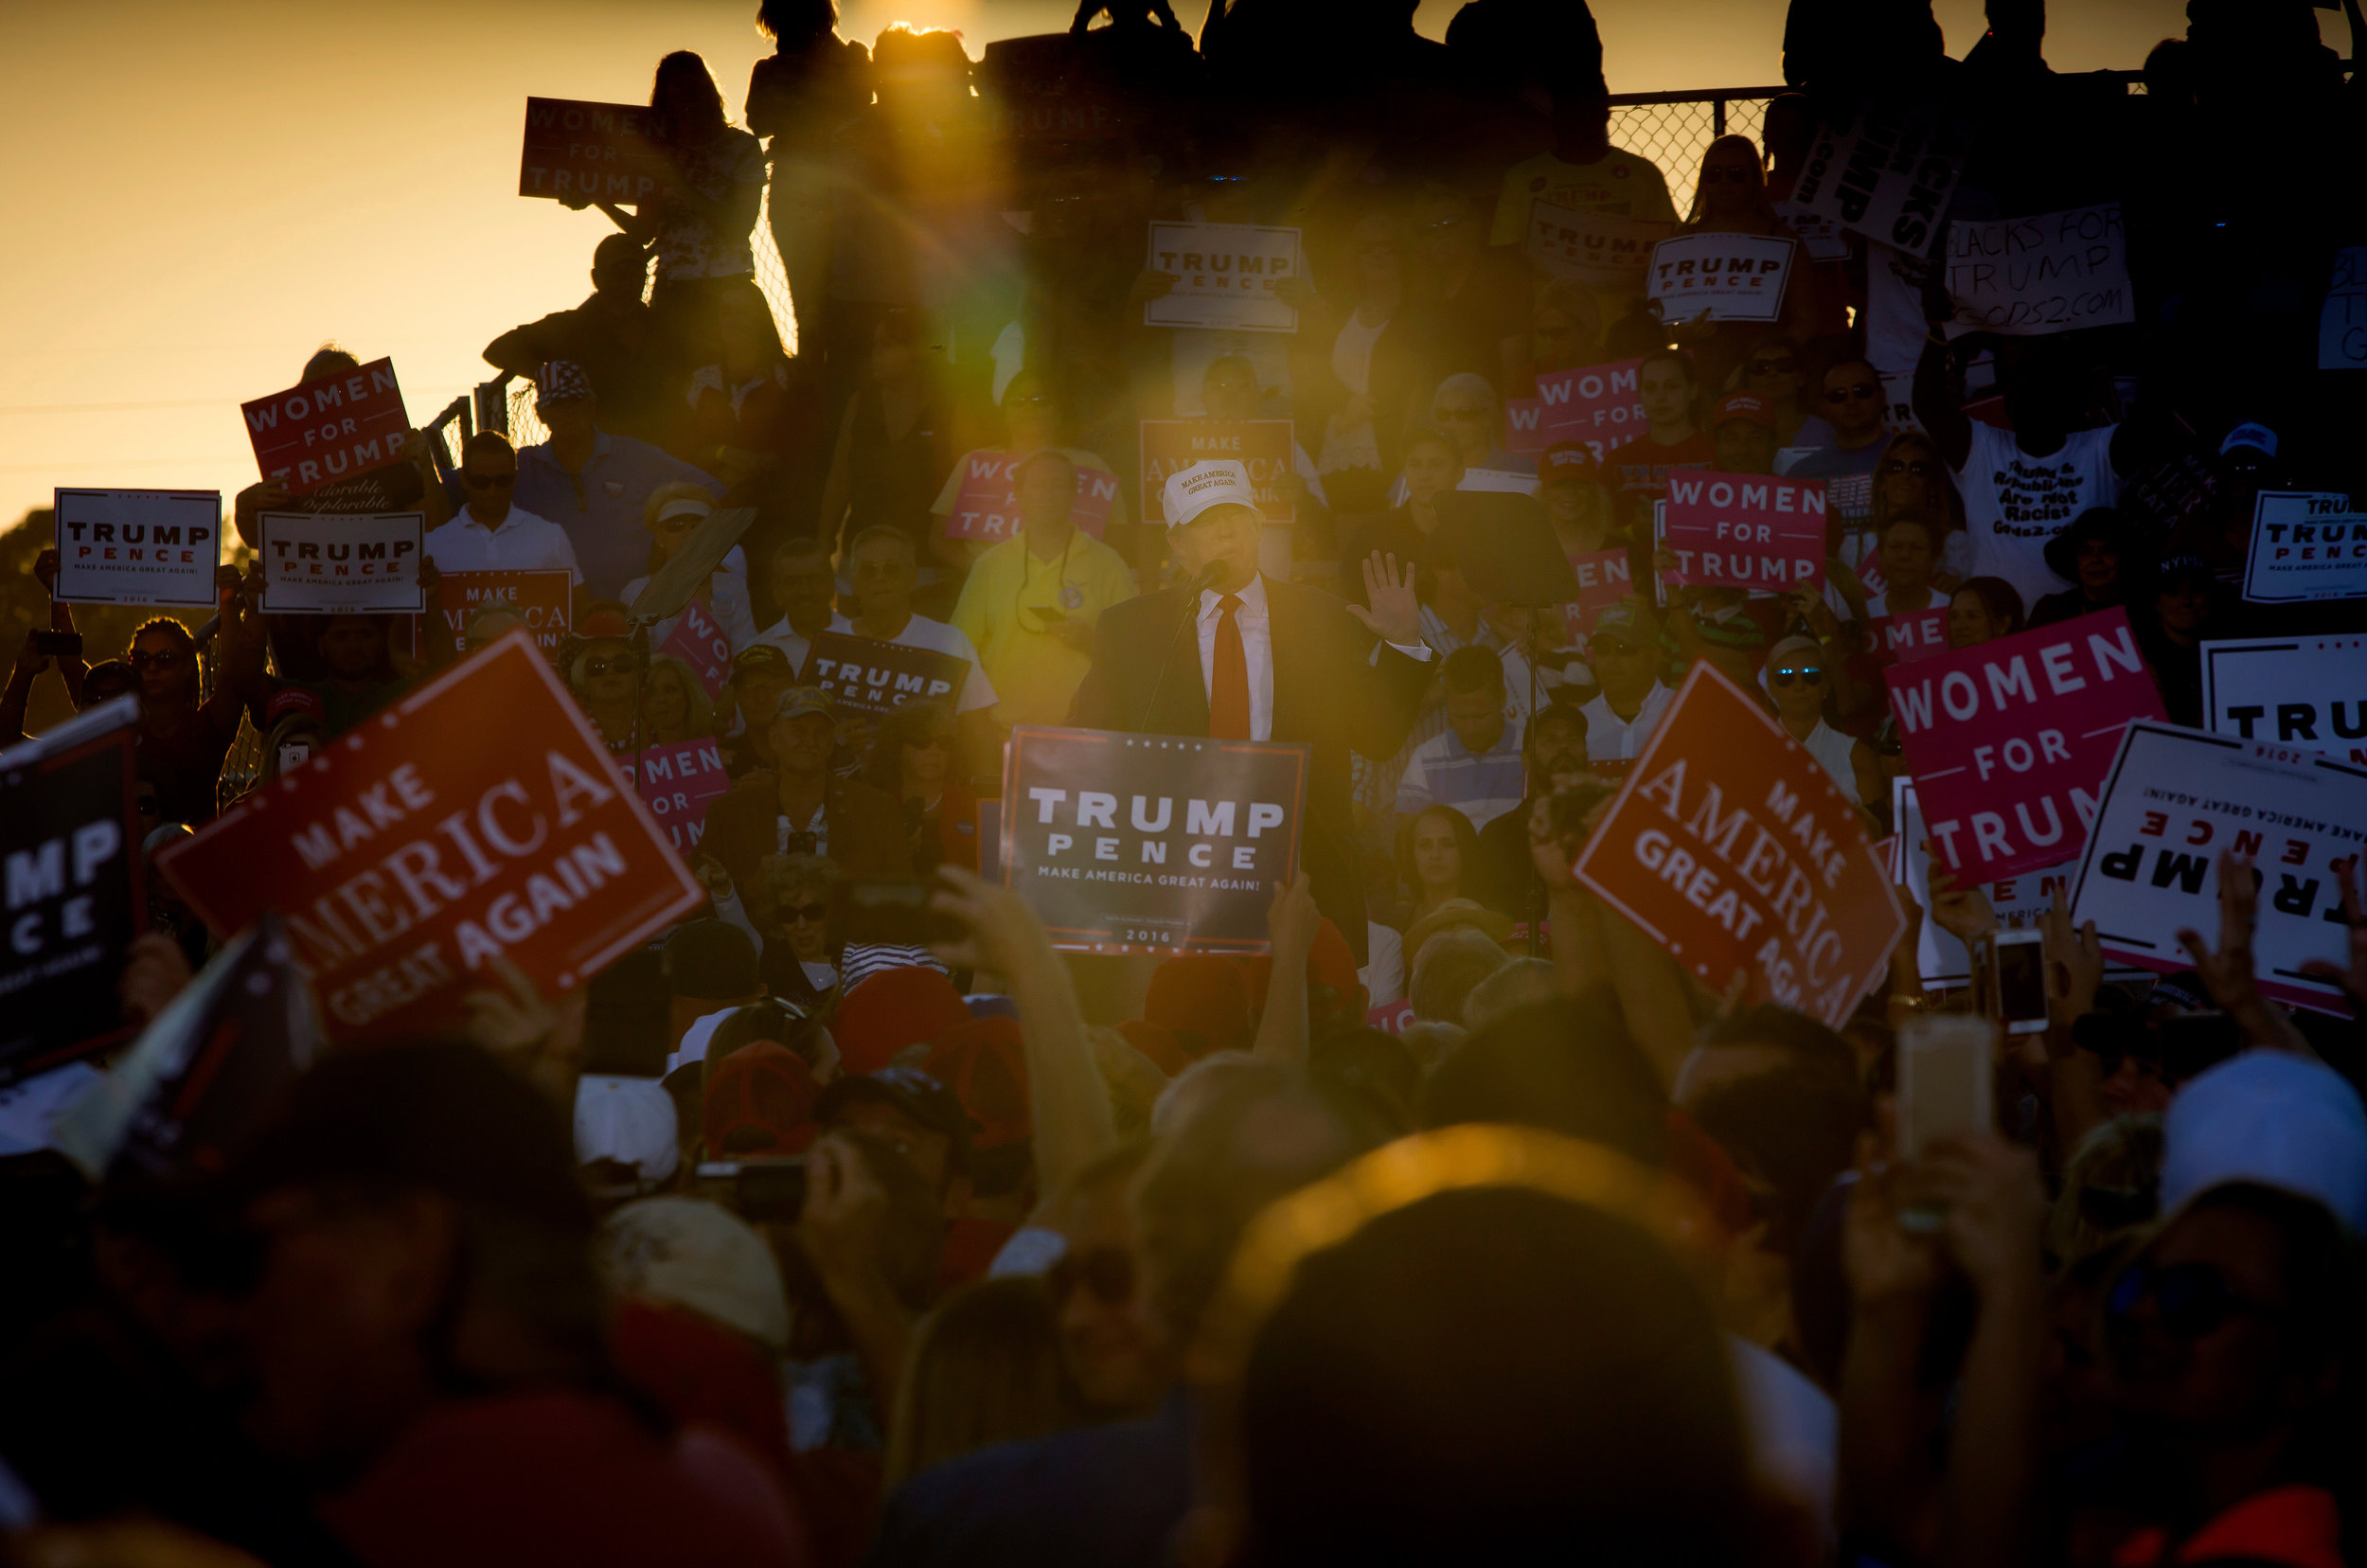   Donald Trump. Naples, FL. 2016  